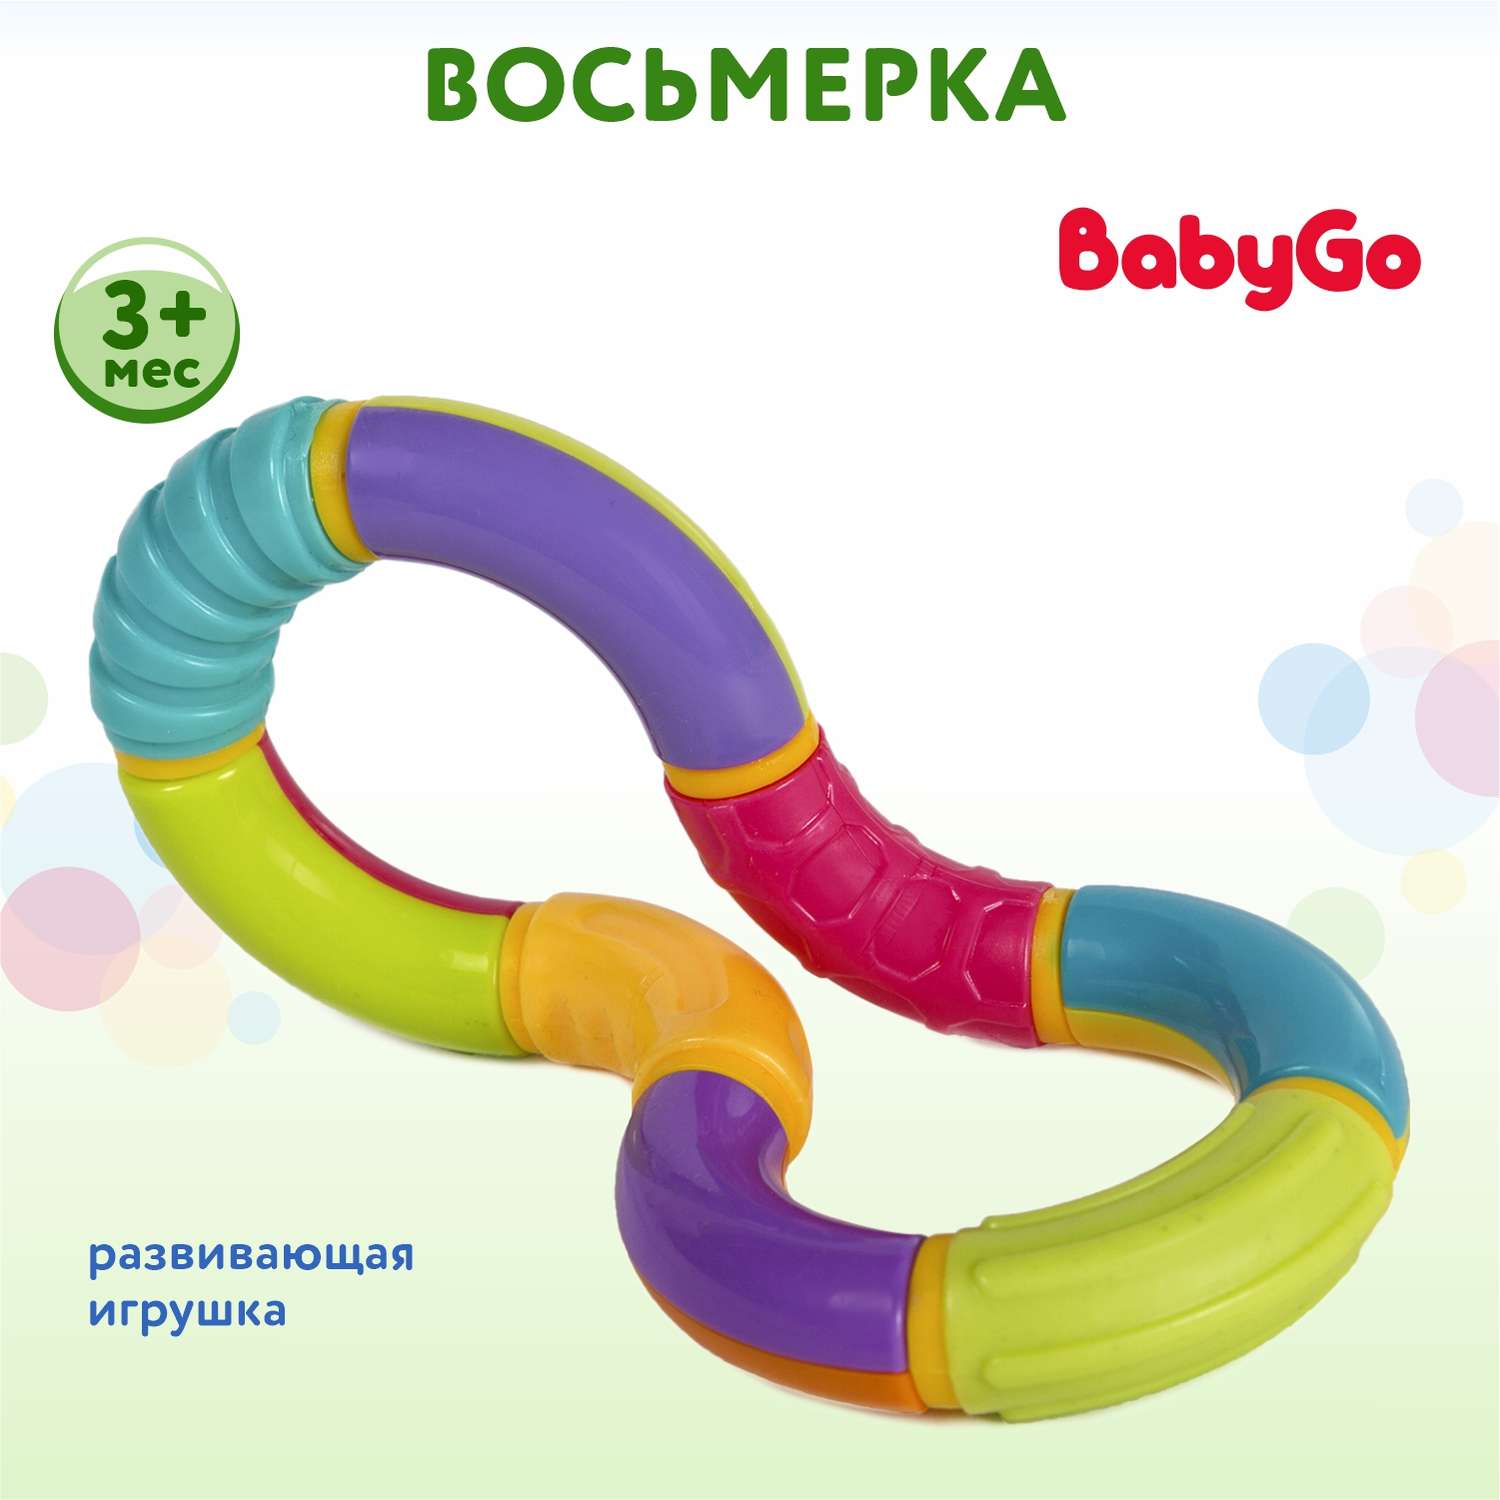 Развивающая игрушка BabyGo Восьмерка - фото 1